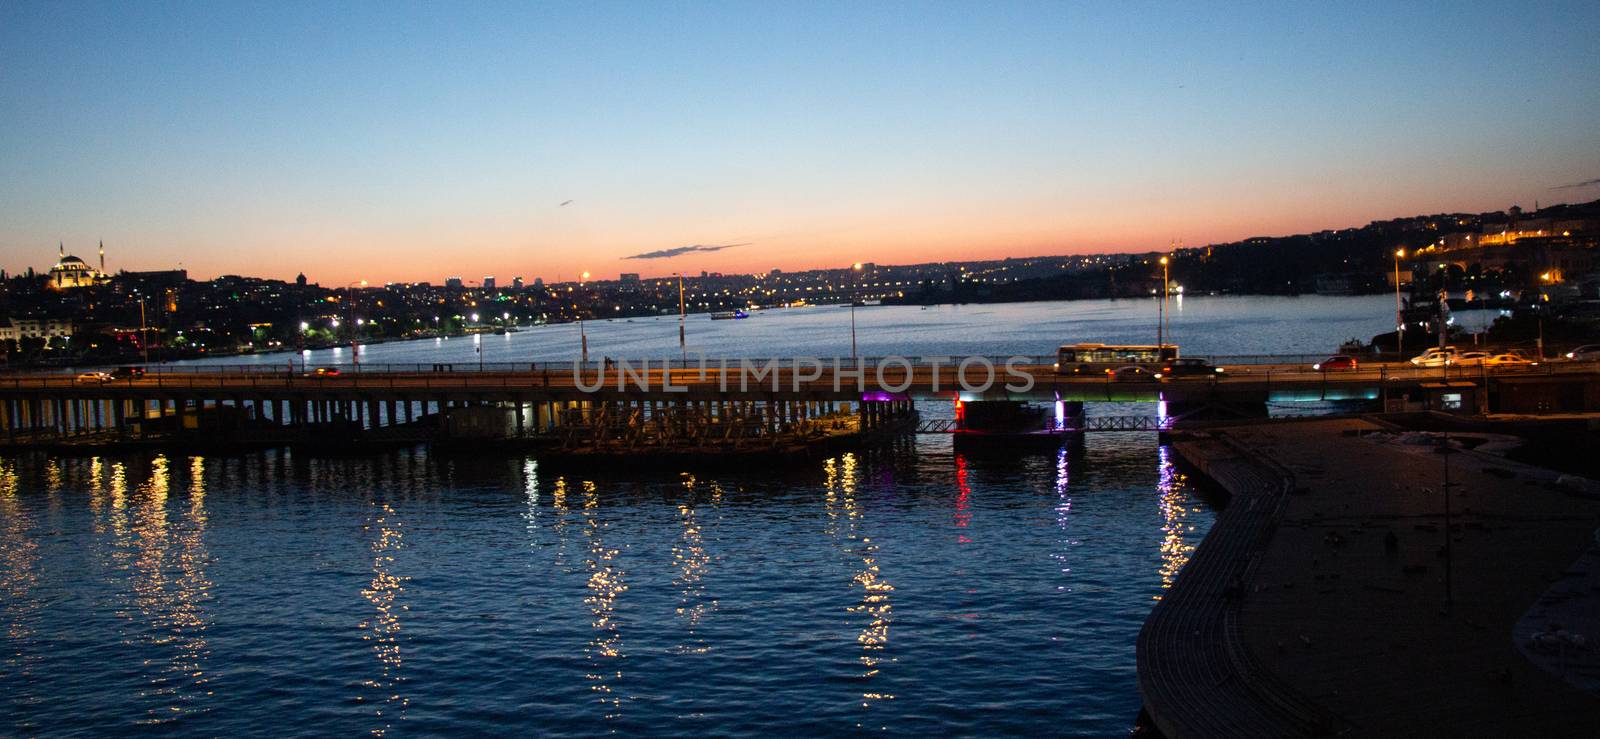 Ataturk bridge on Golden Horn at night on display